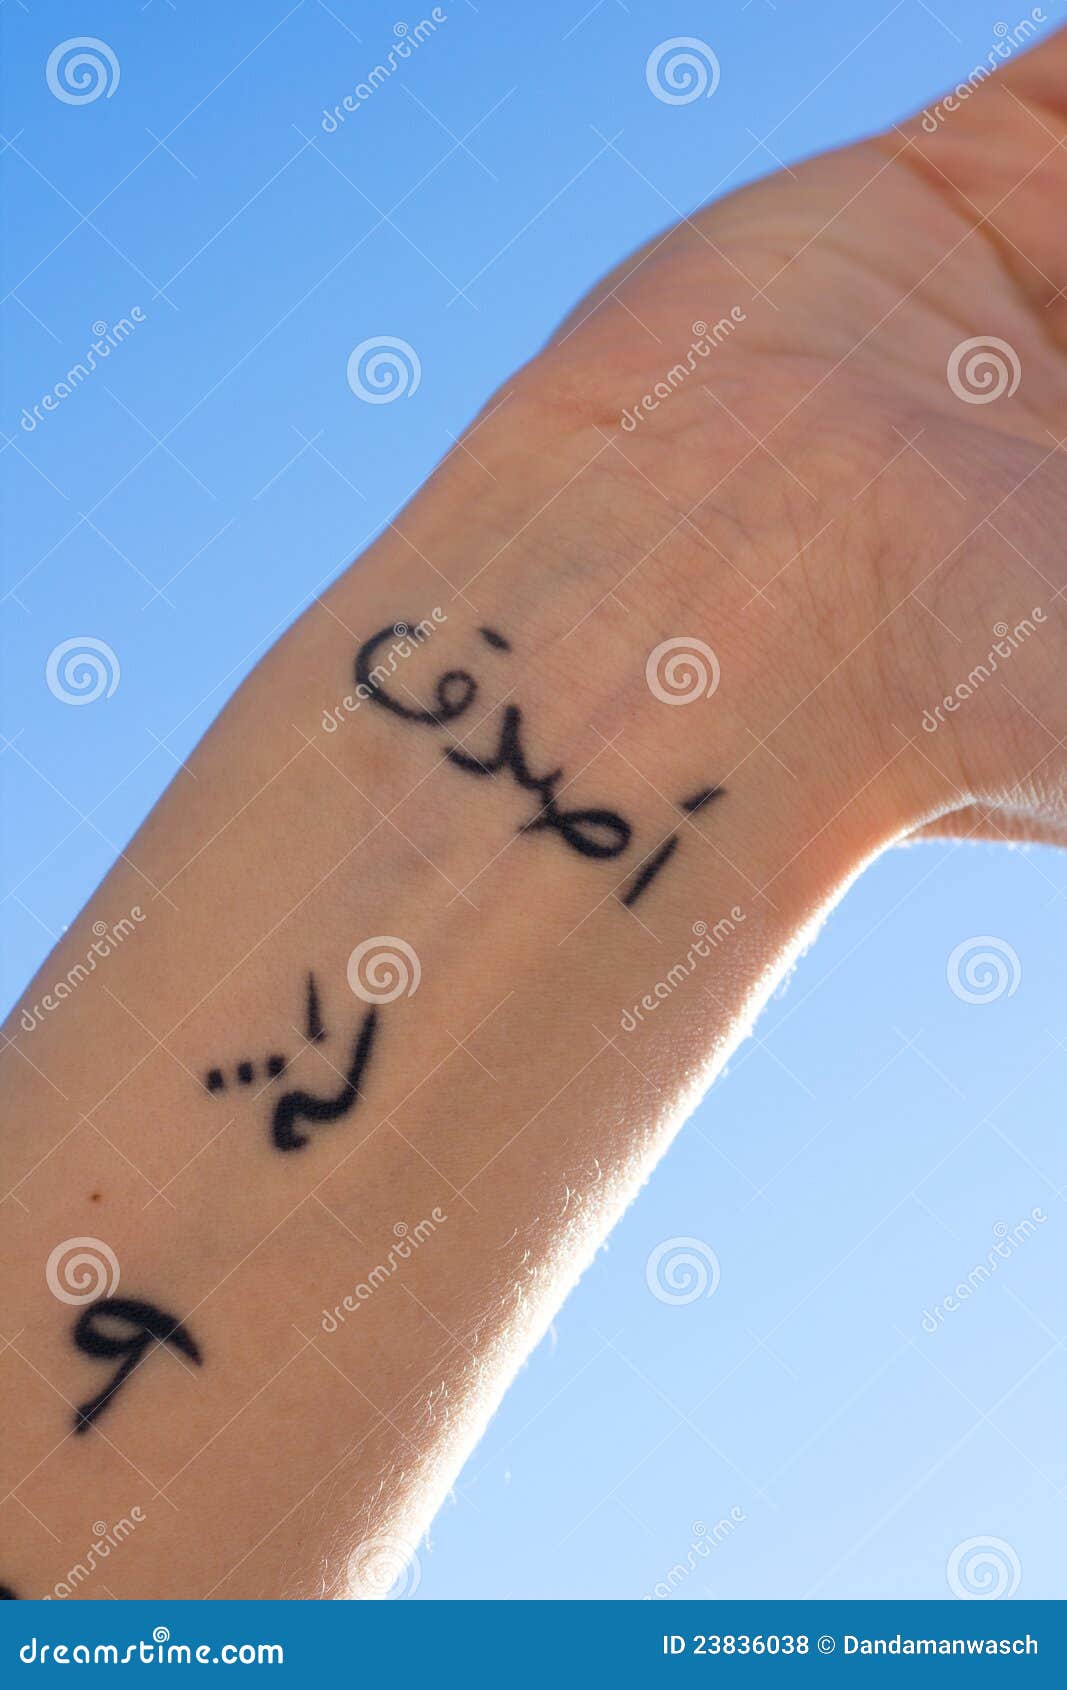 313 #imam #mahdi #aba_saleh #tattoo #inked #test #trial #… | Flickr